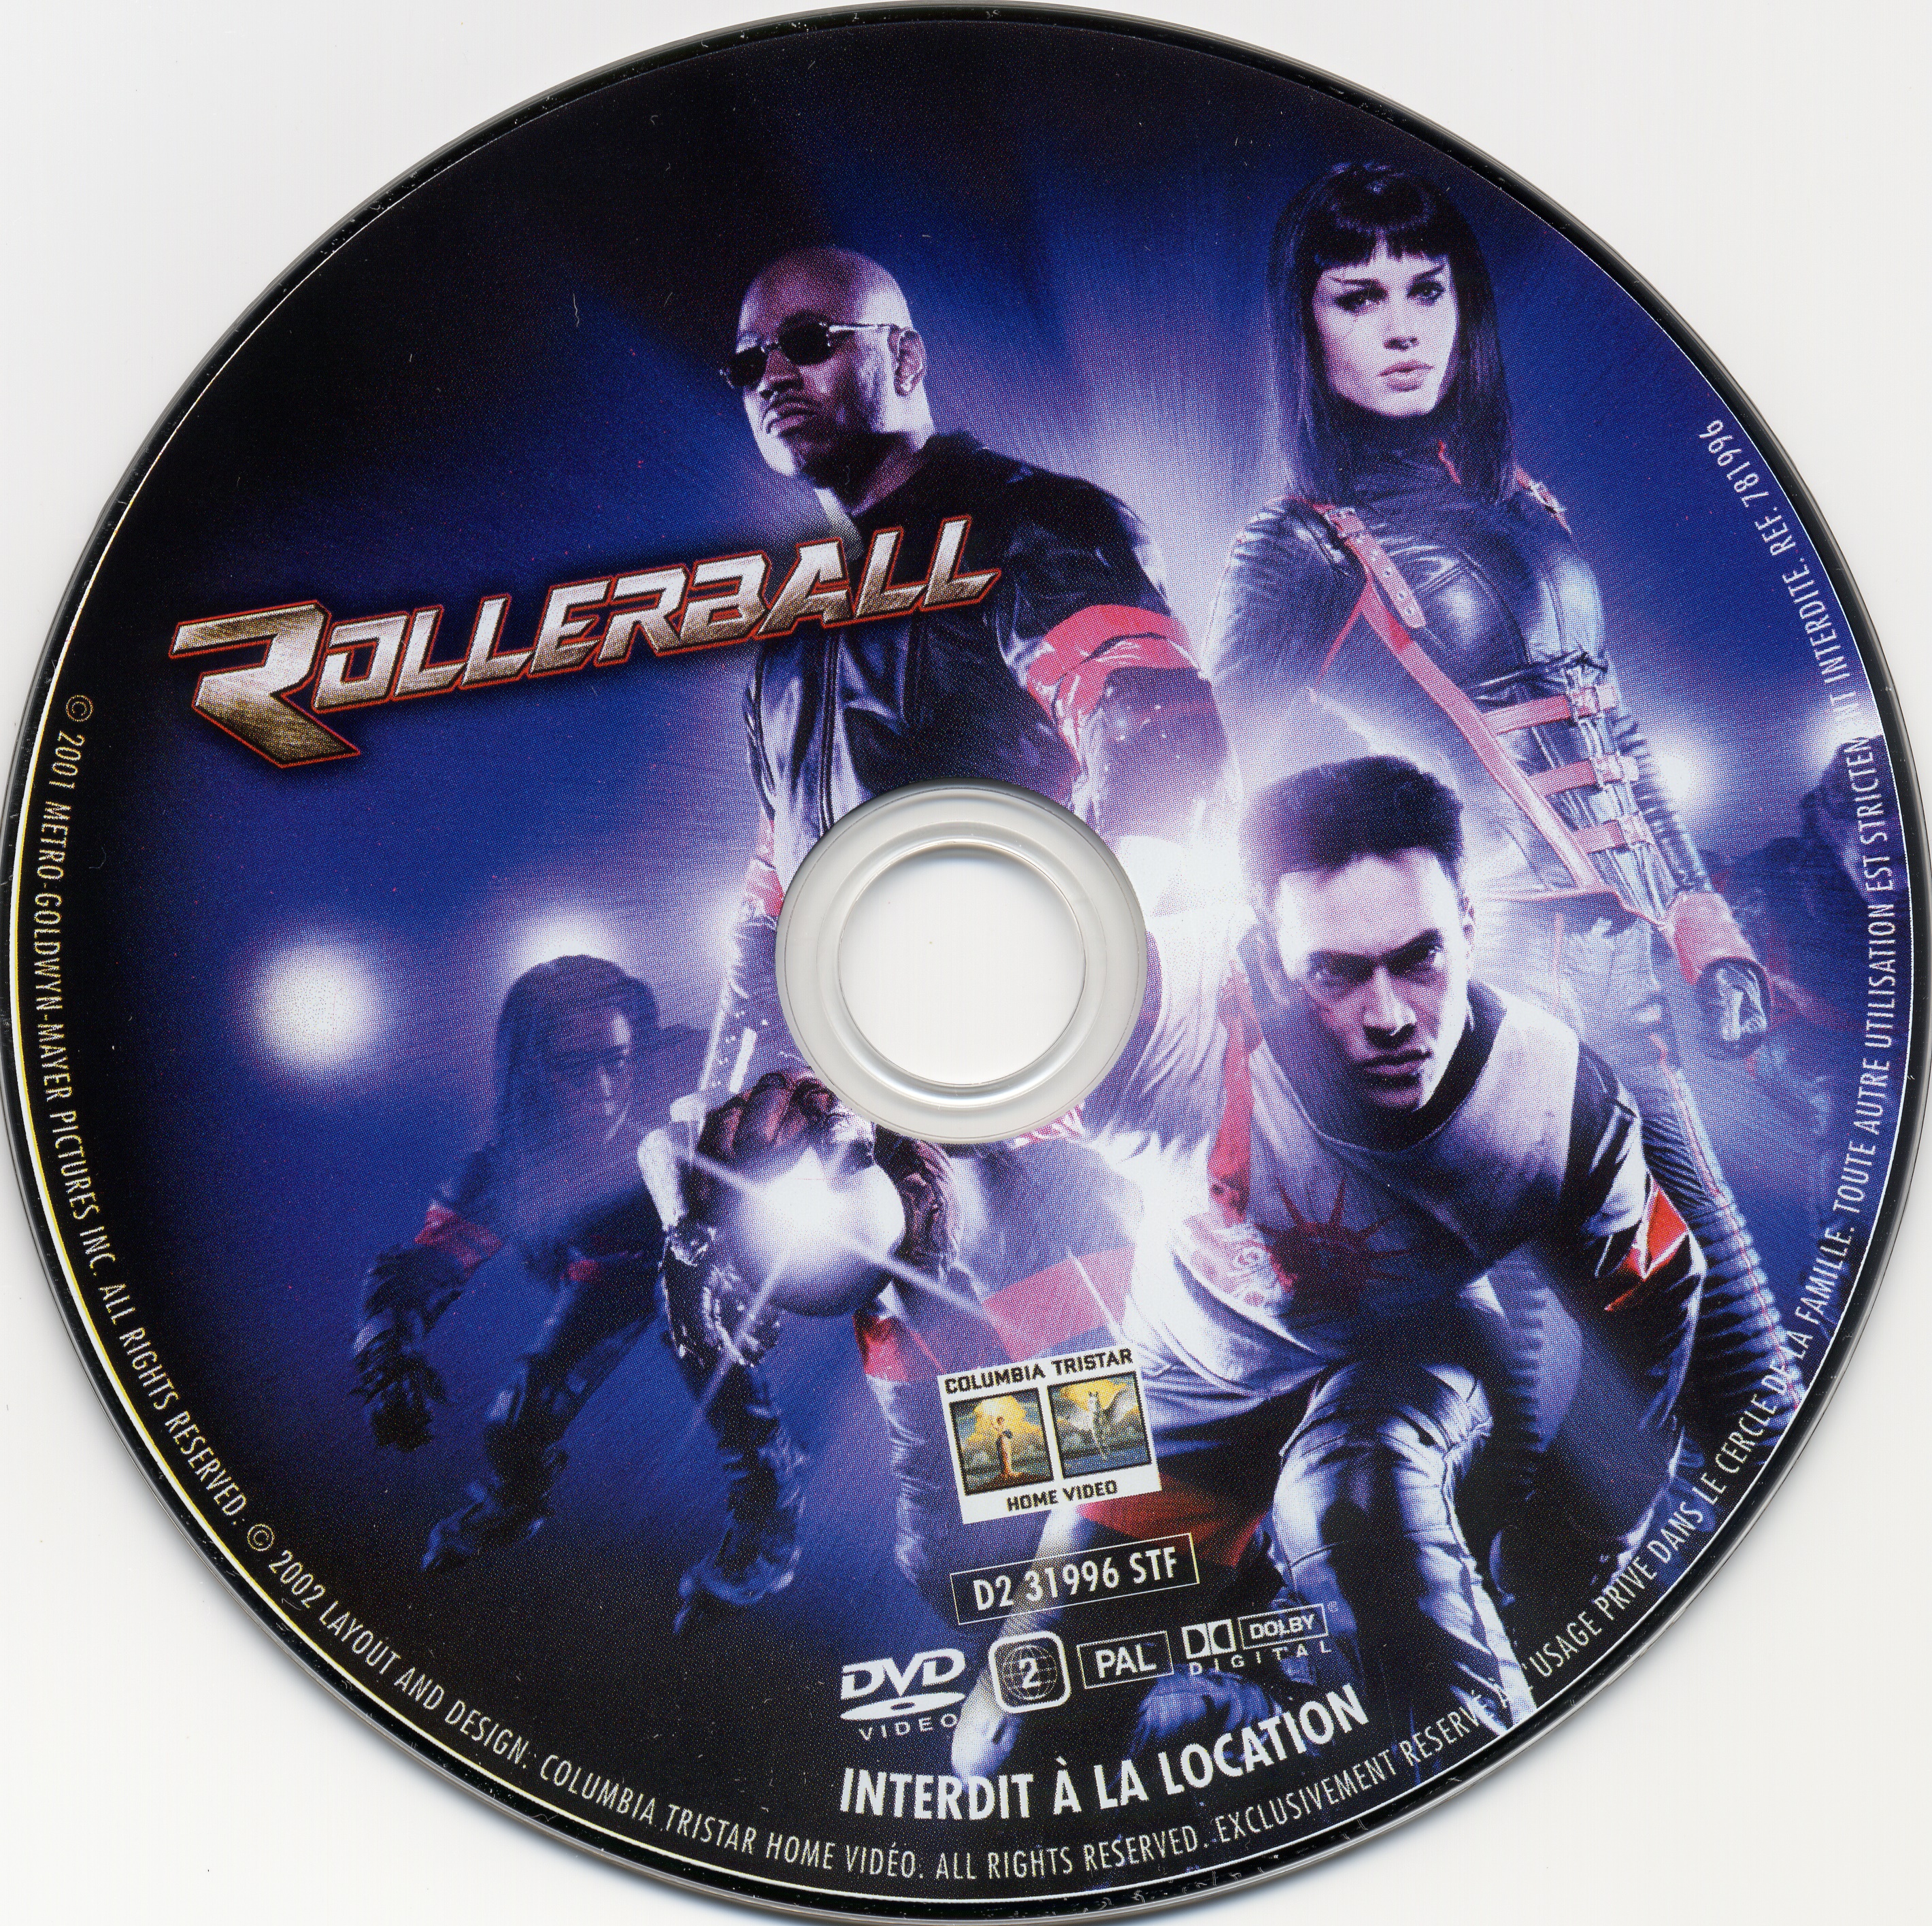 Rollerball (2002) v2